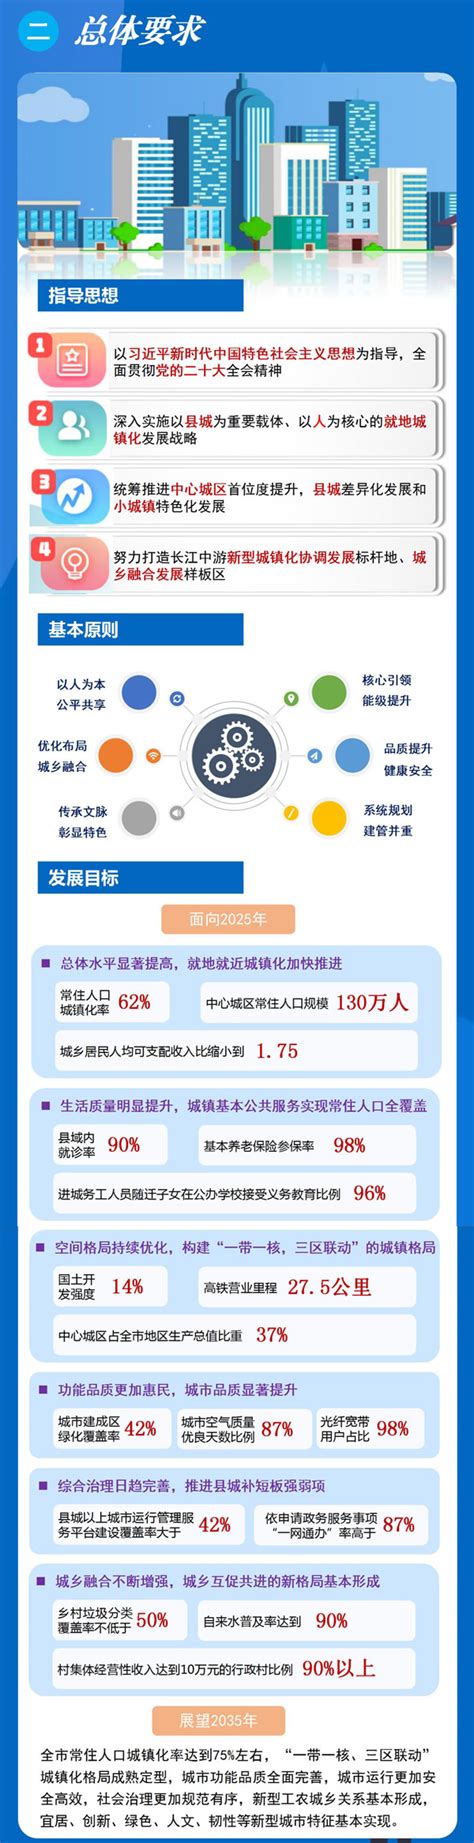 【图片解读】荆州市新型城镇化规划（2021-2035）暨“十四五”实施方案-荆州市发展和改革委员会-政府信息公开